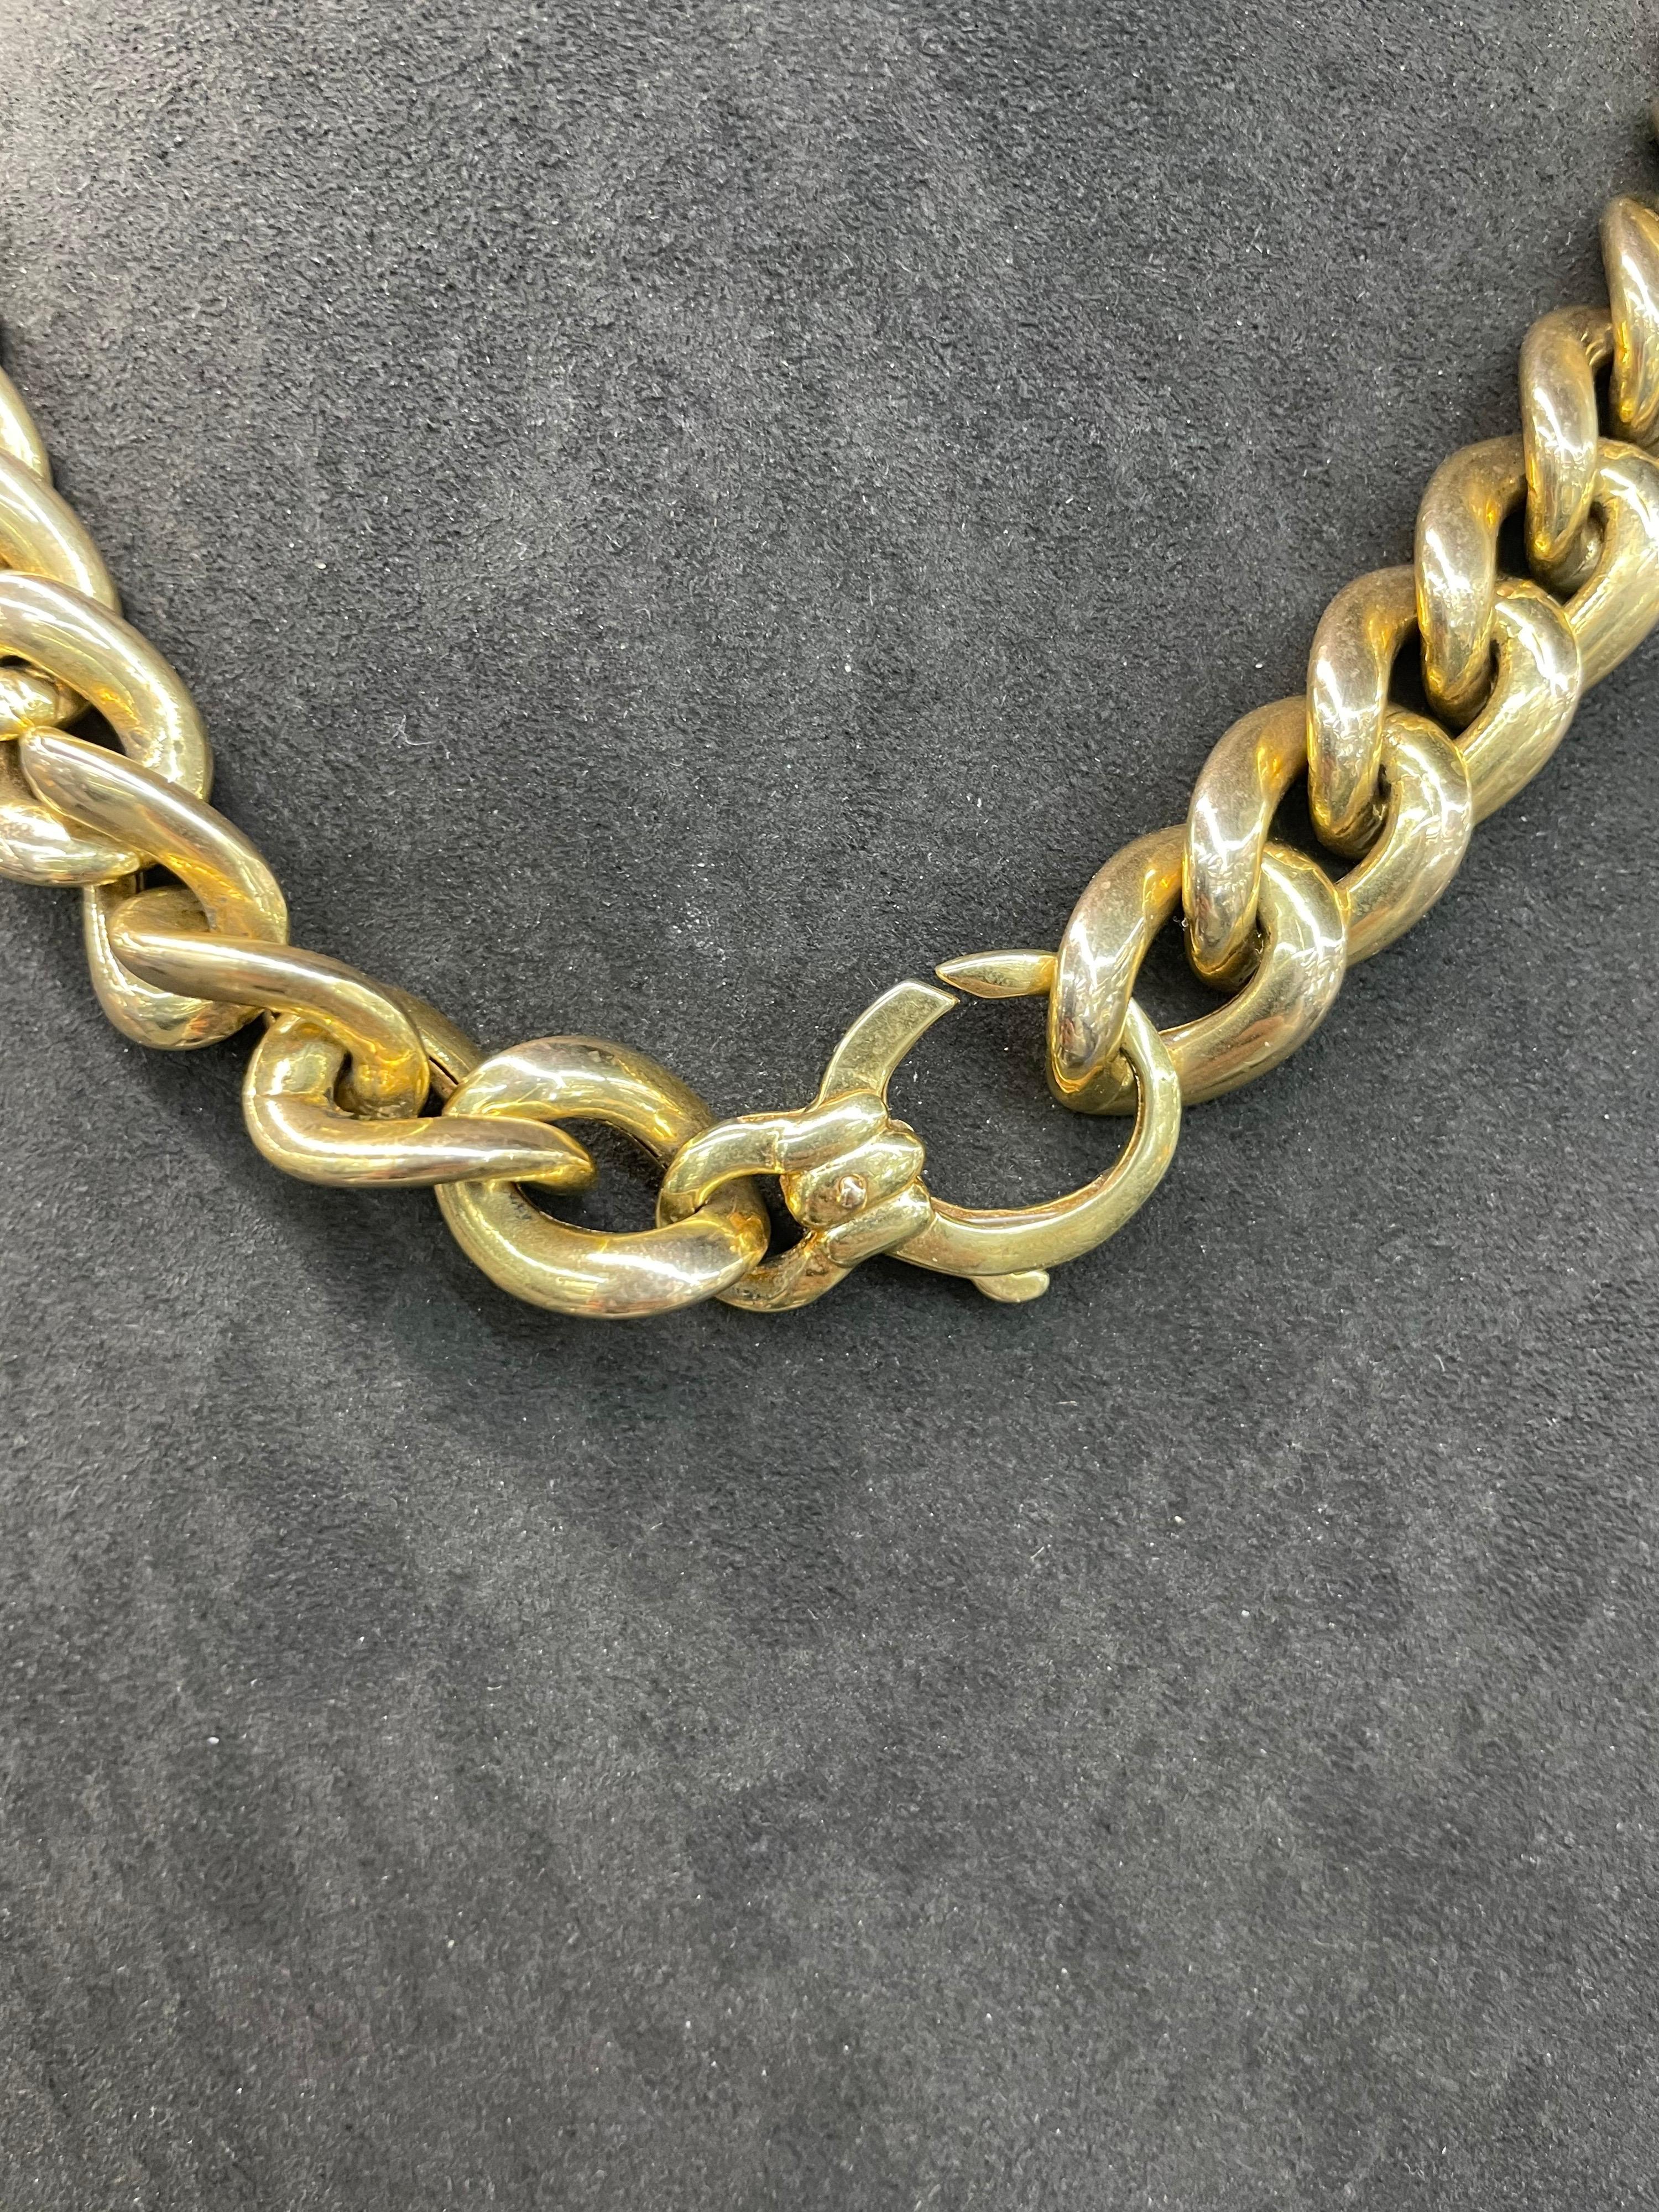 14 karat gold chain